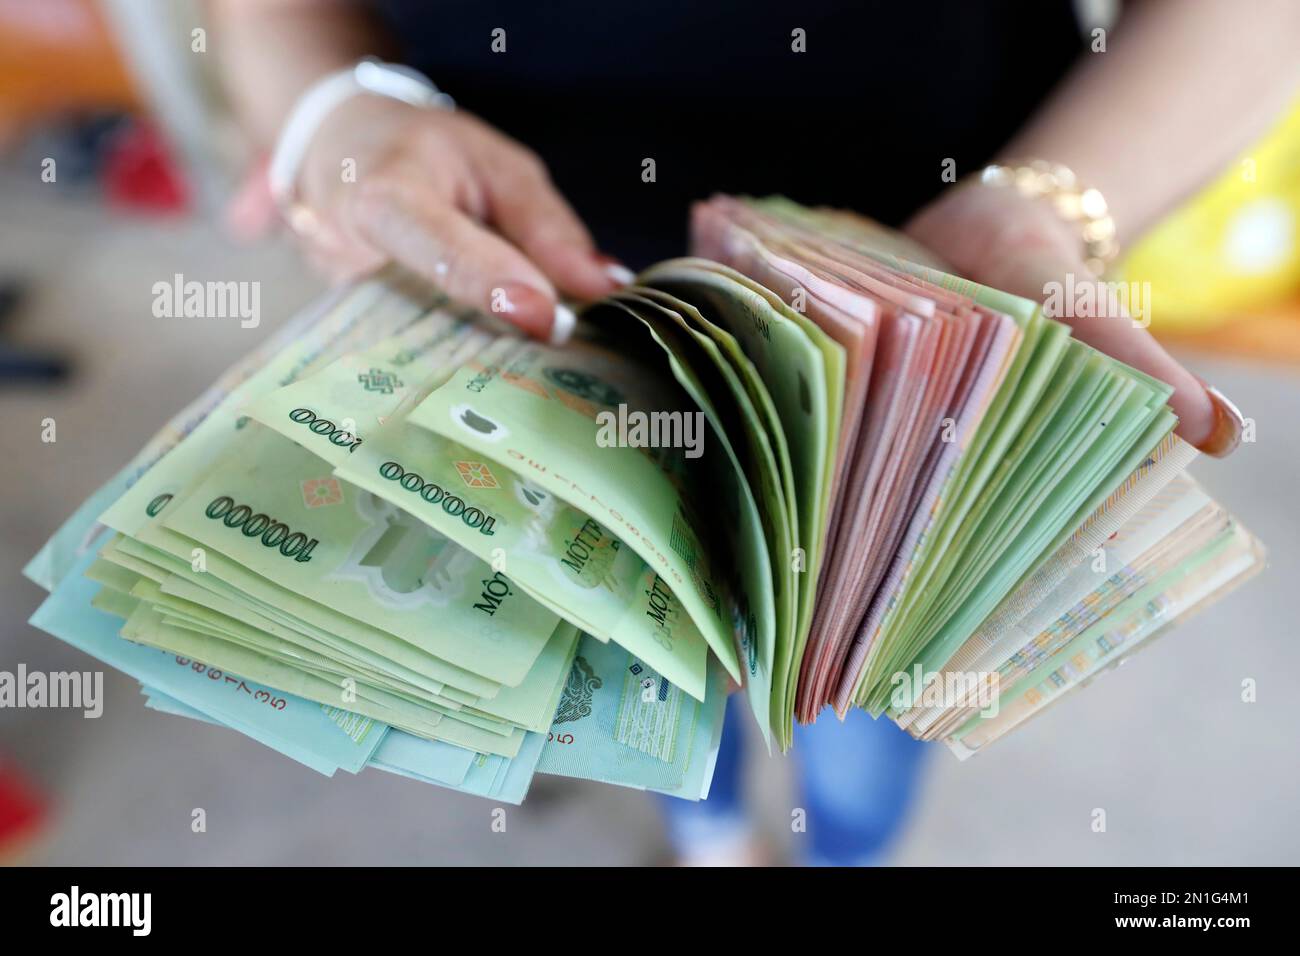 Monnaie vietnamienne, le Dong, billets de banque détenus par la femme, concept d'économie, Vietnam, Indochine, Asie du Sud-est, Asie Banque D'Images